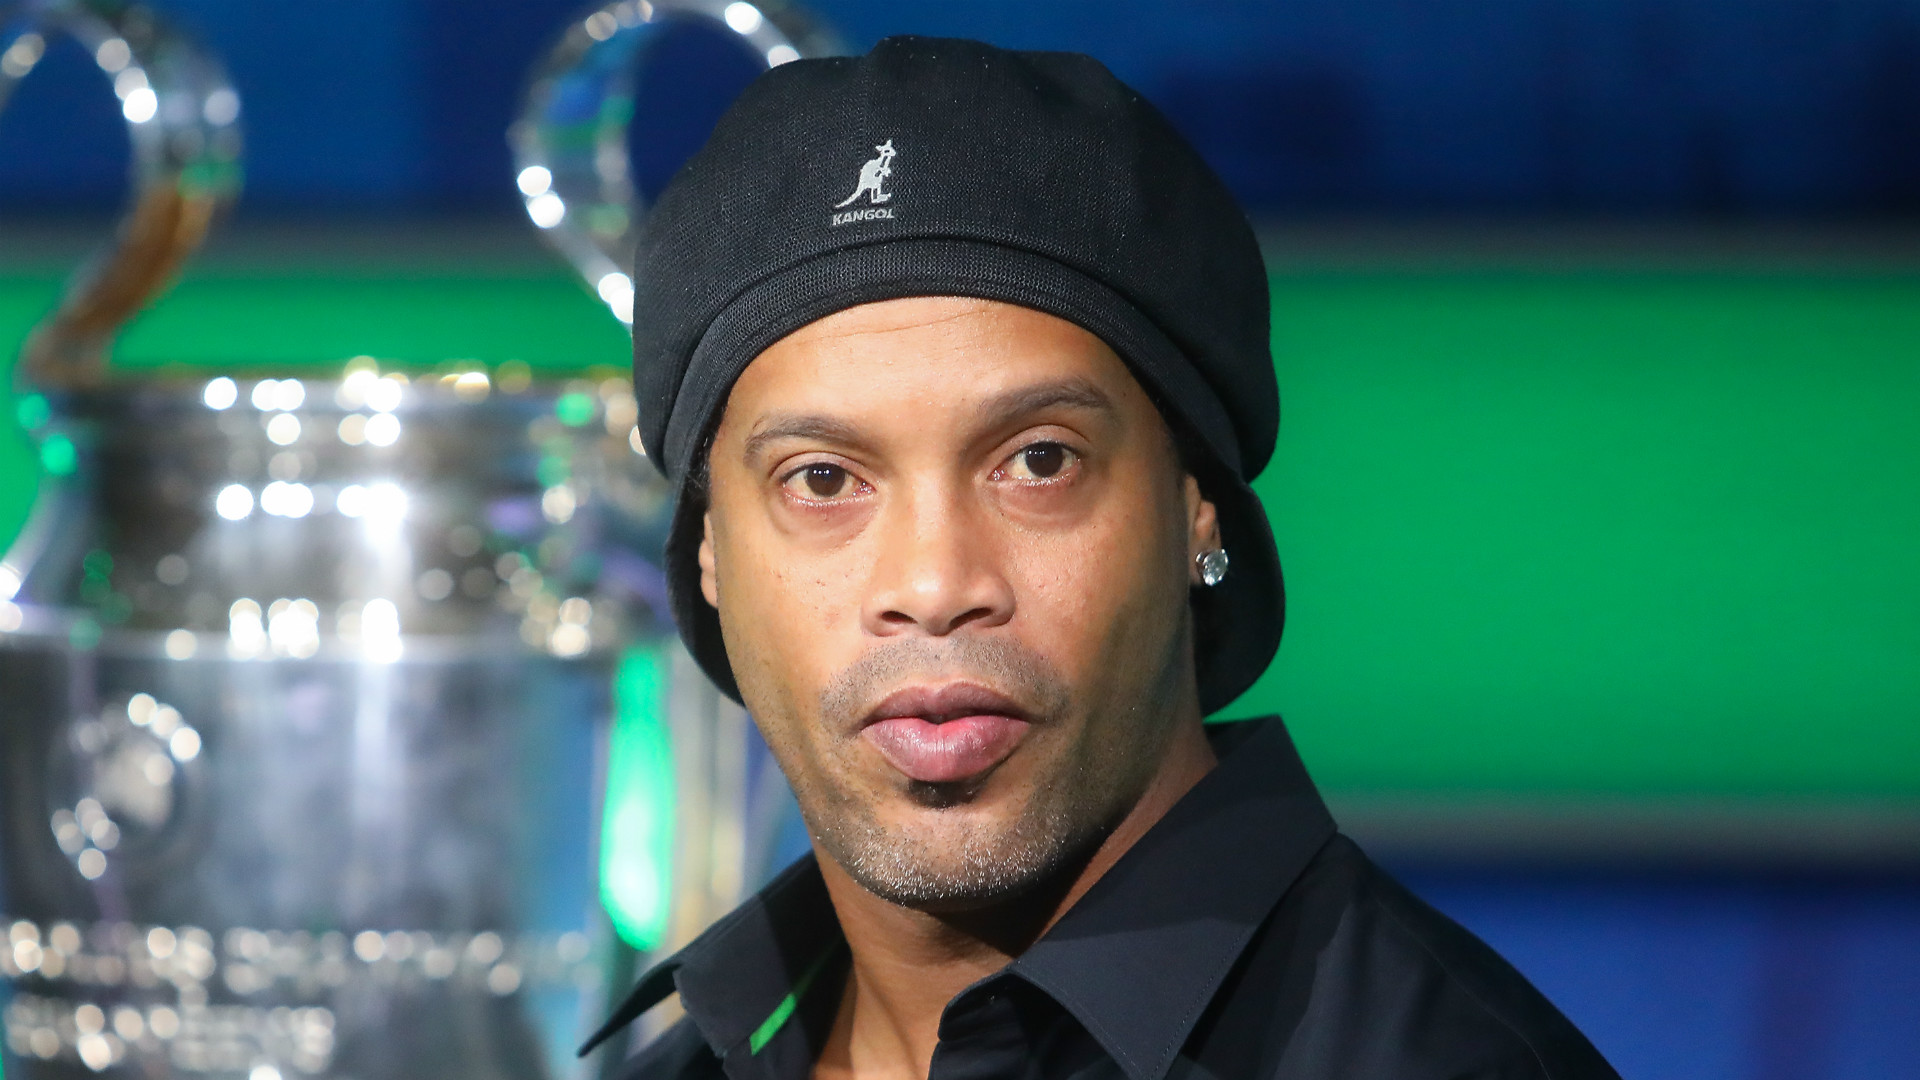 Voici comment Ronaldinho a fêté son anniversaire en prison